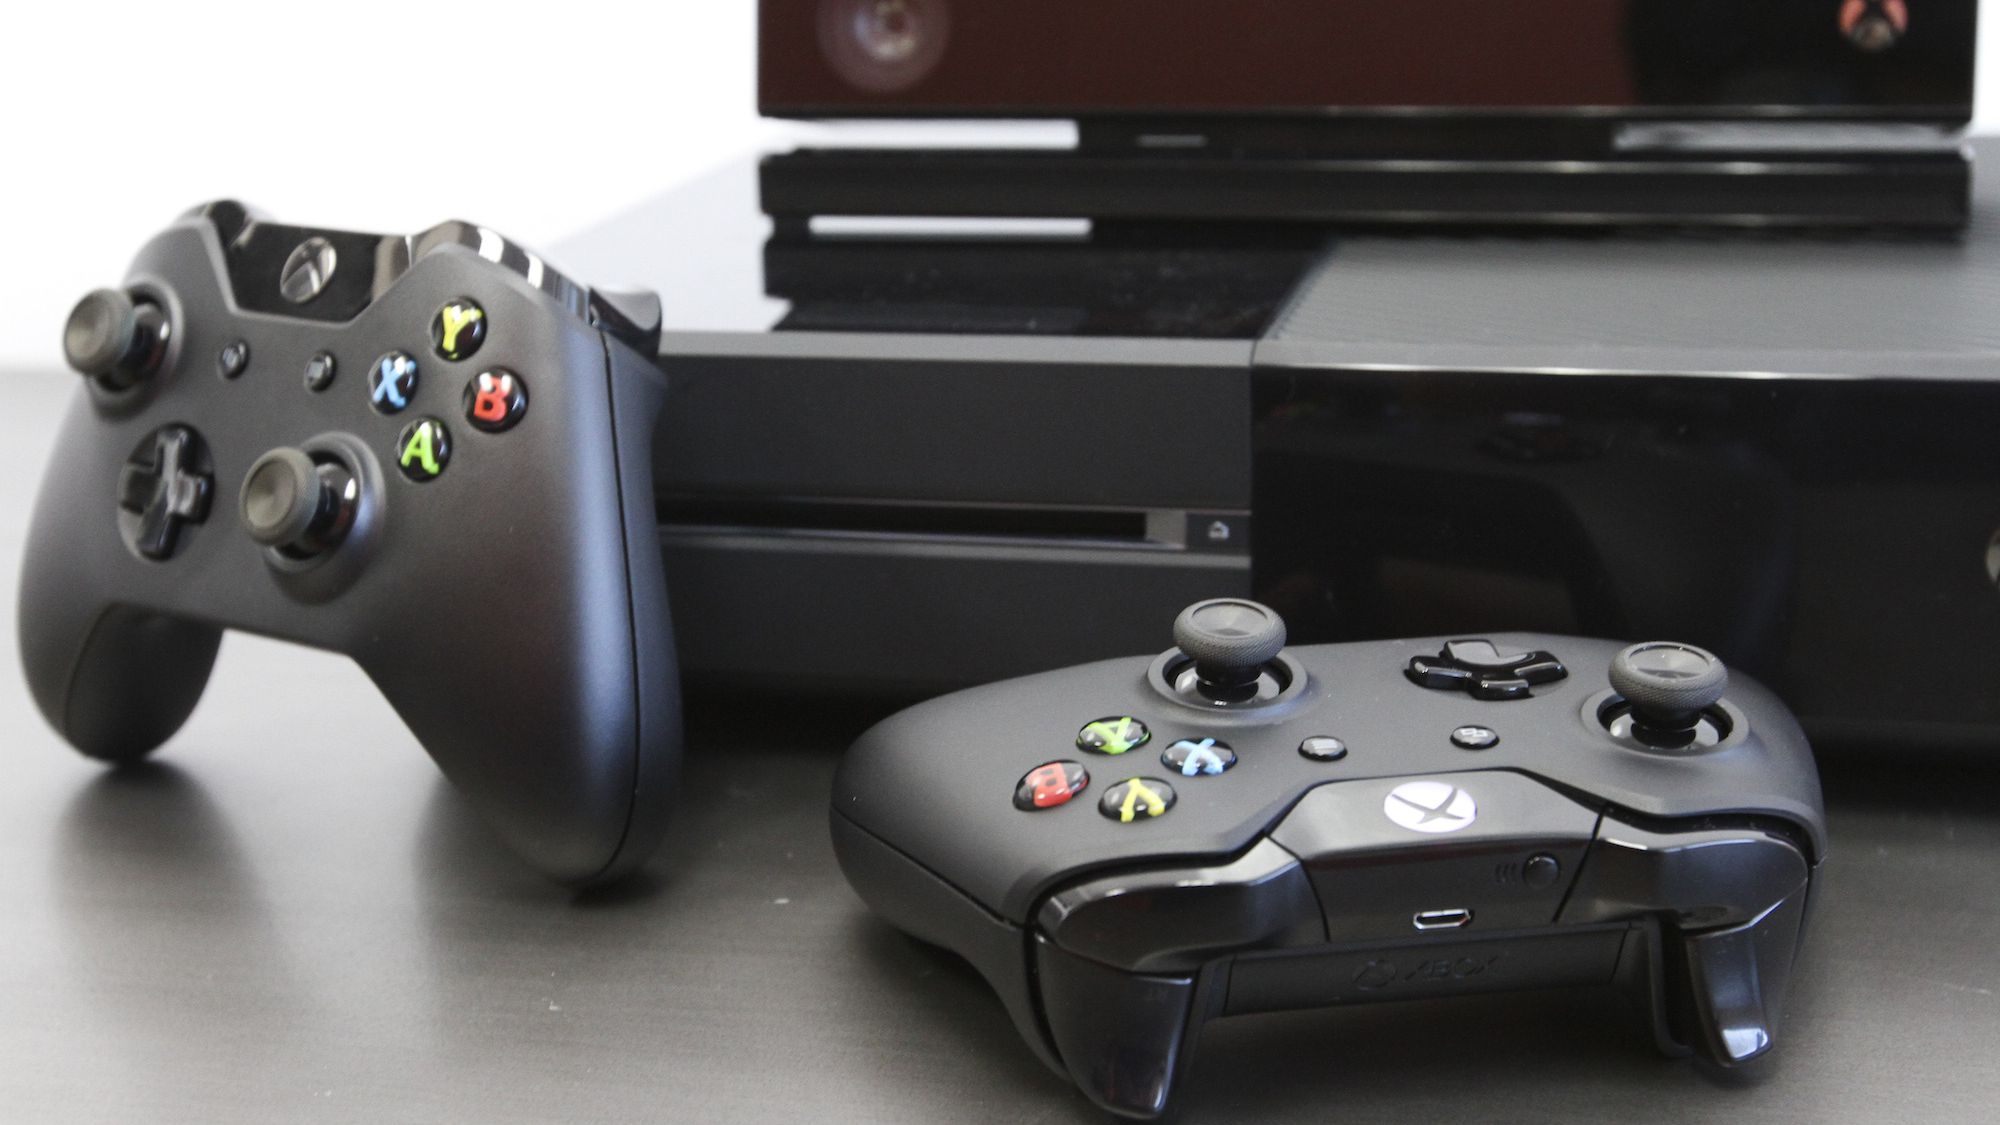 Fotos: Conheça os 21 jogos de X360 que já rodam no Xbox One - 23/07/2015 -  UOL Start